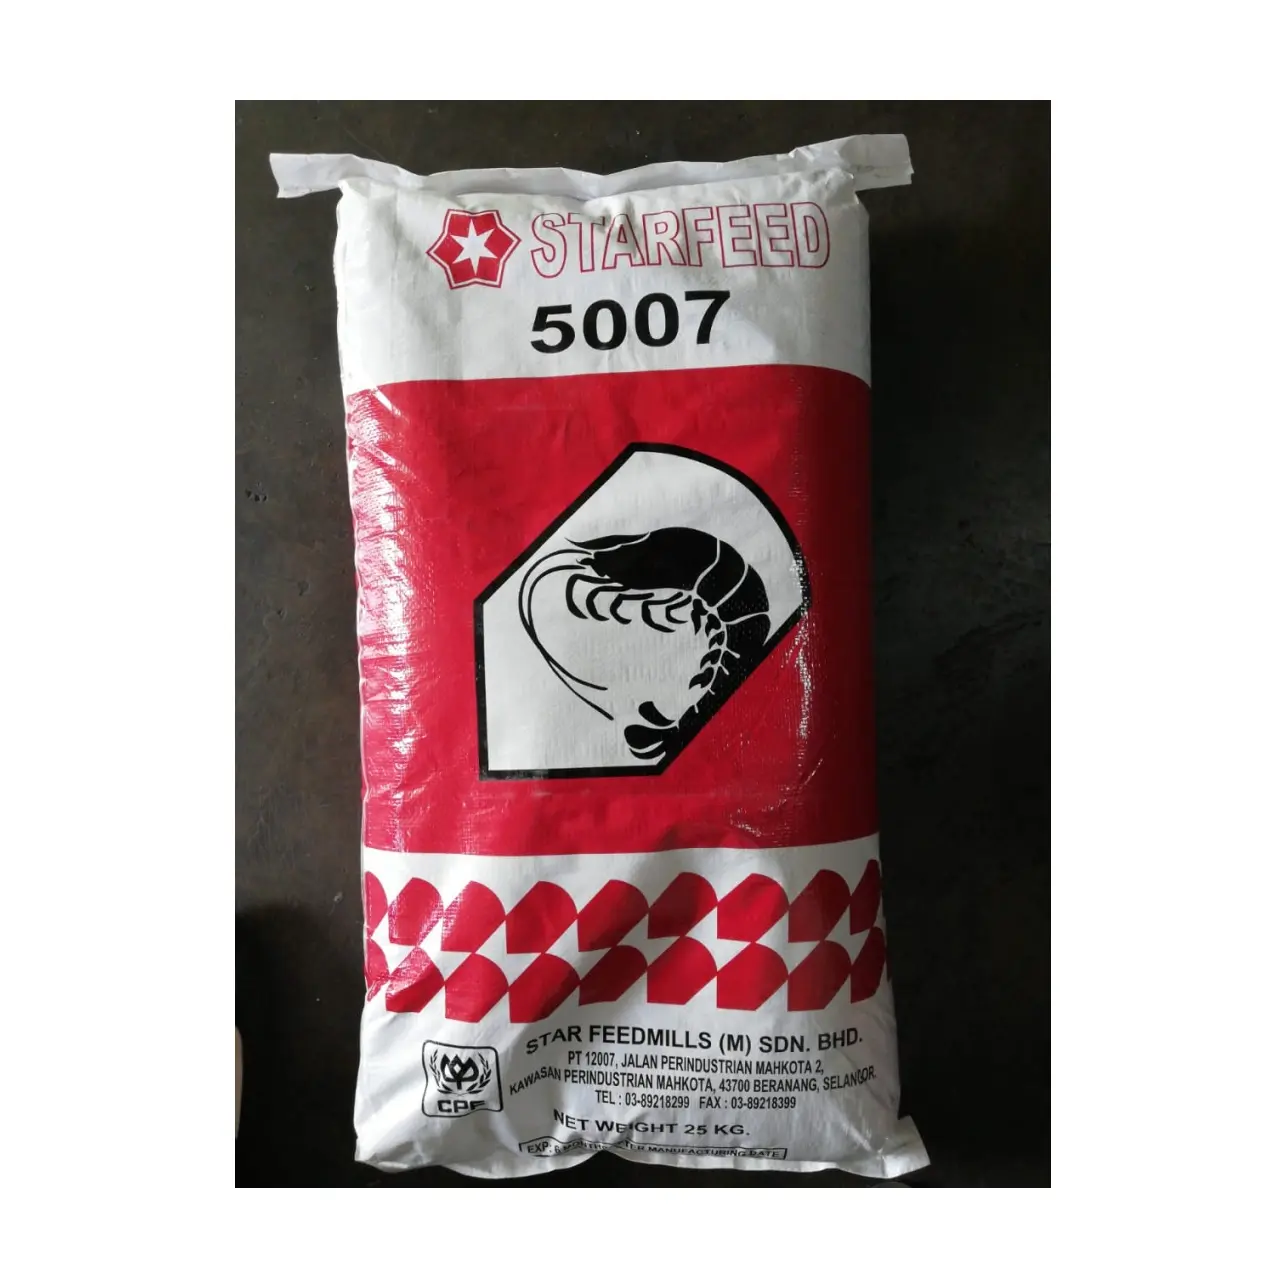 Embalaje de bolsas Color marrón oscuro Productos de alimentación de Malasia Uso múltiple por día (5007) Alimentación de camarones tigre negro